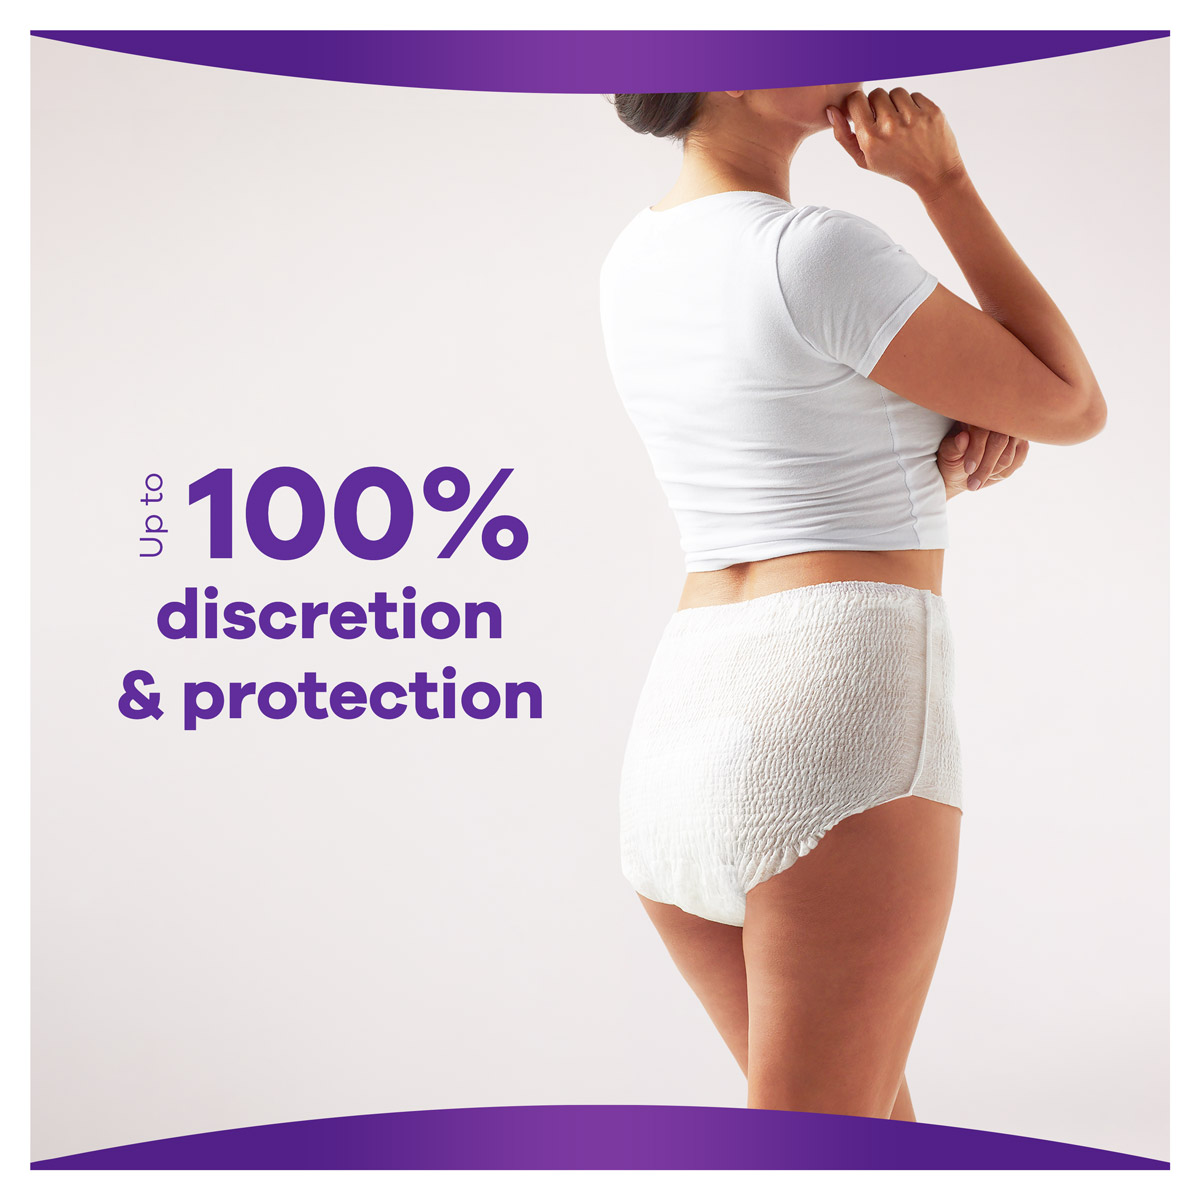 Always Discreet Adult Postpartum Incontinence Underwear for Women